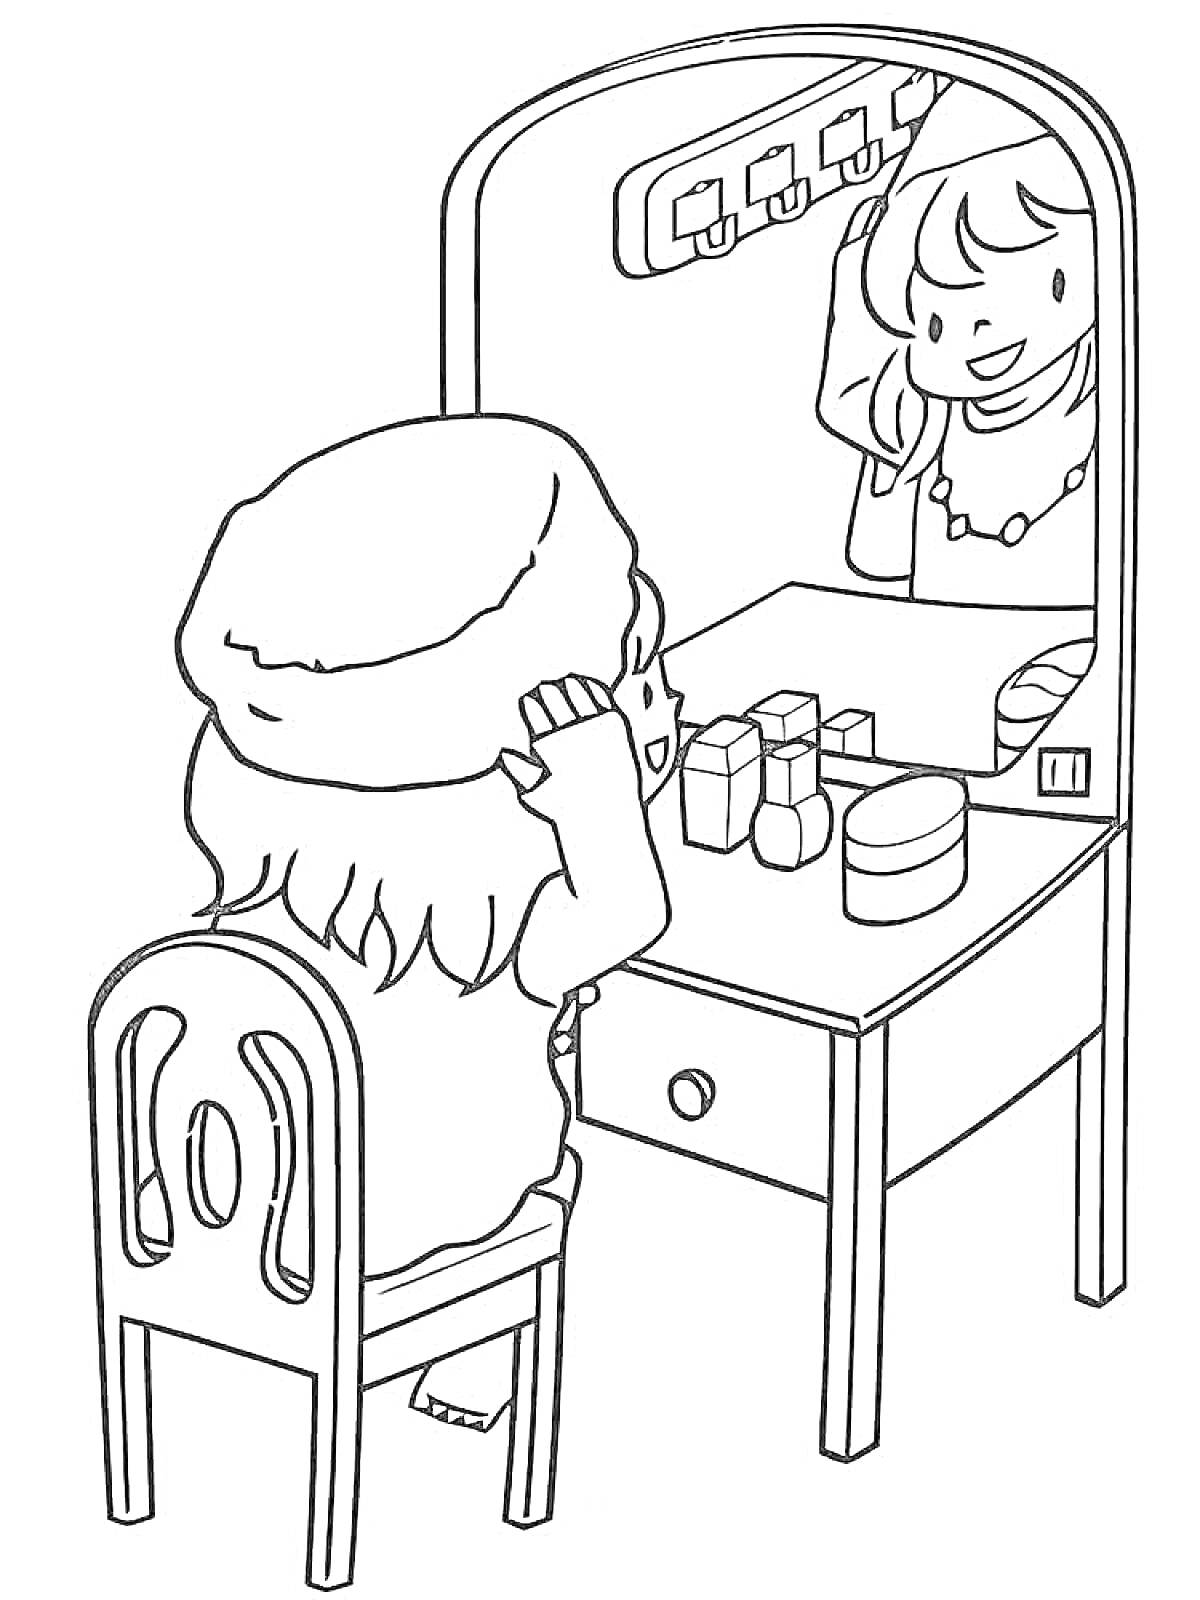 Раскраска Девочка перед зеркалом с косметикой на столе